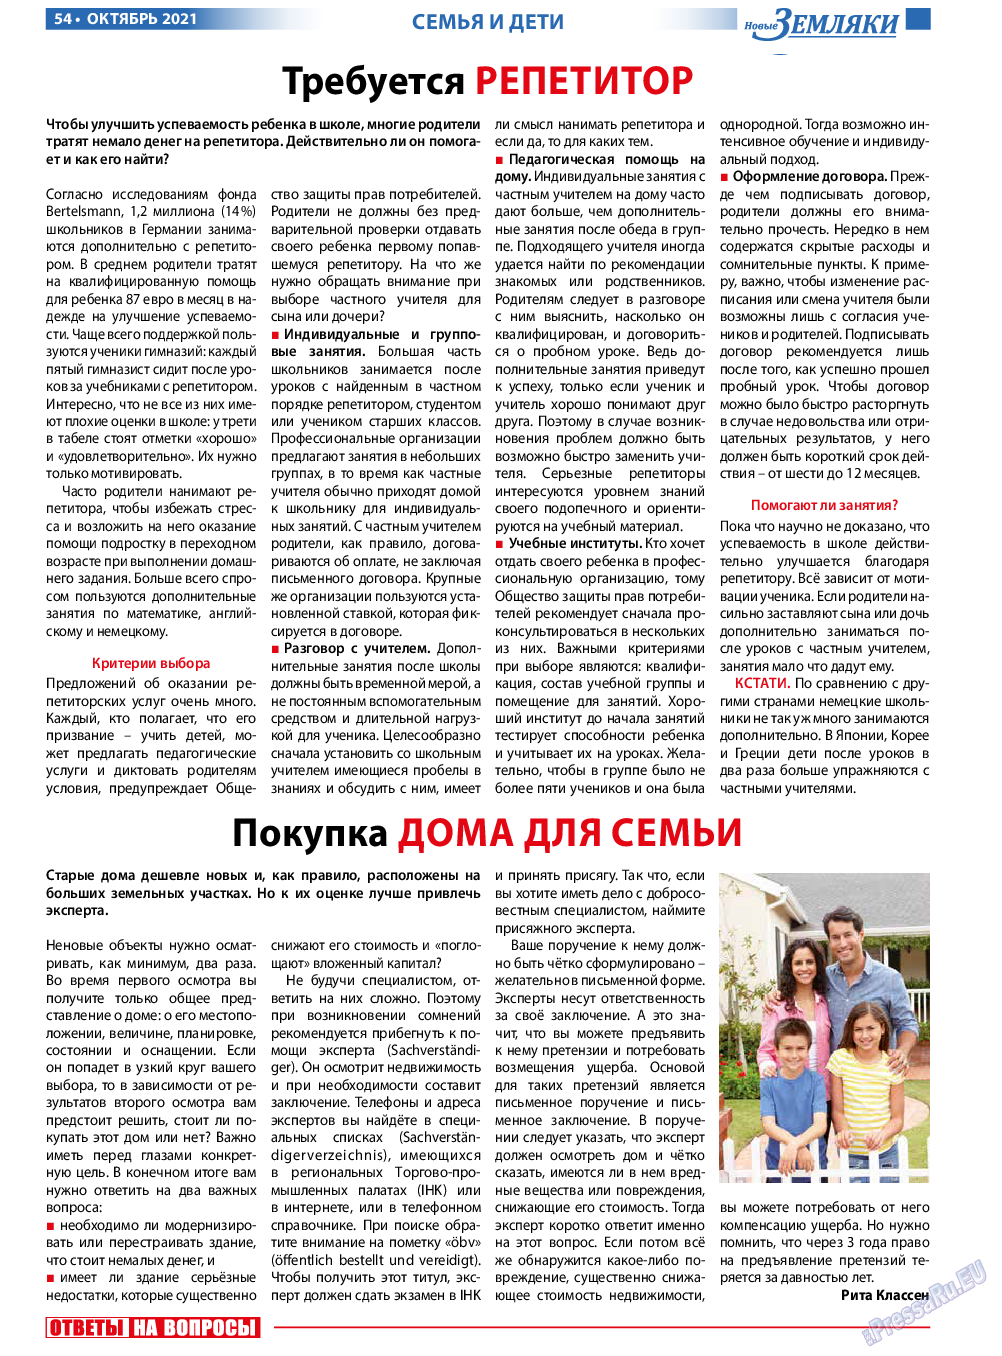 Новые Земляки, газета. 2021 №10 стр.54